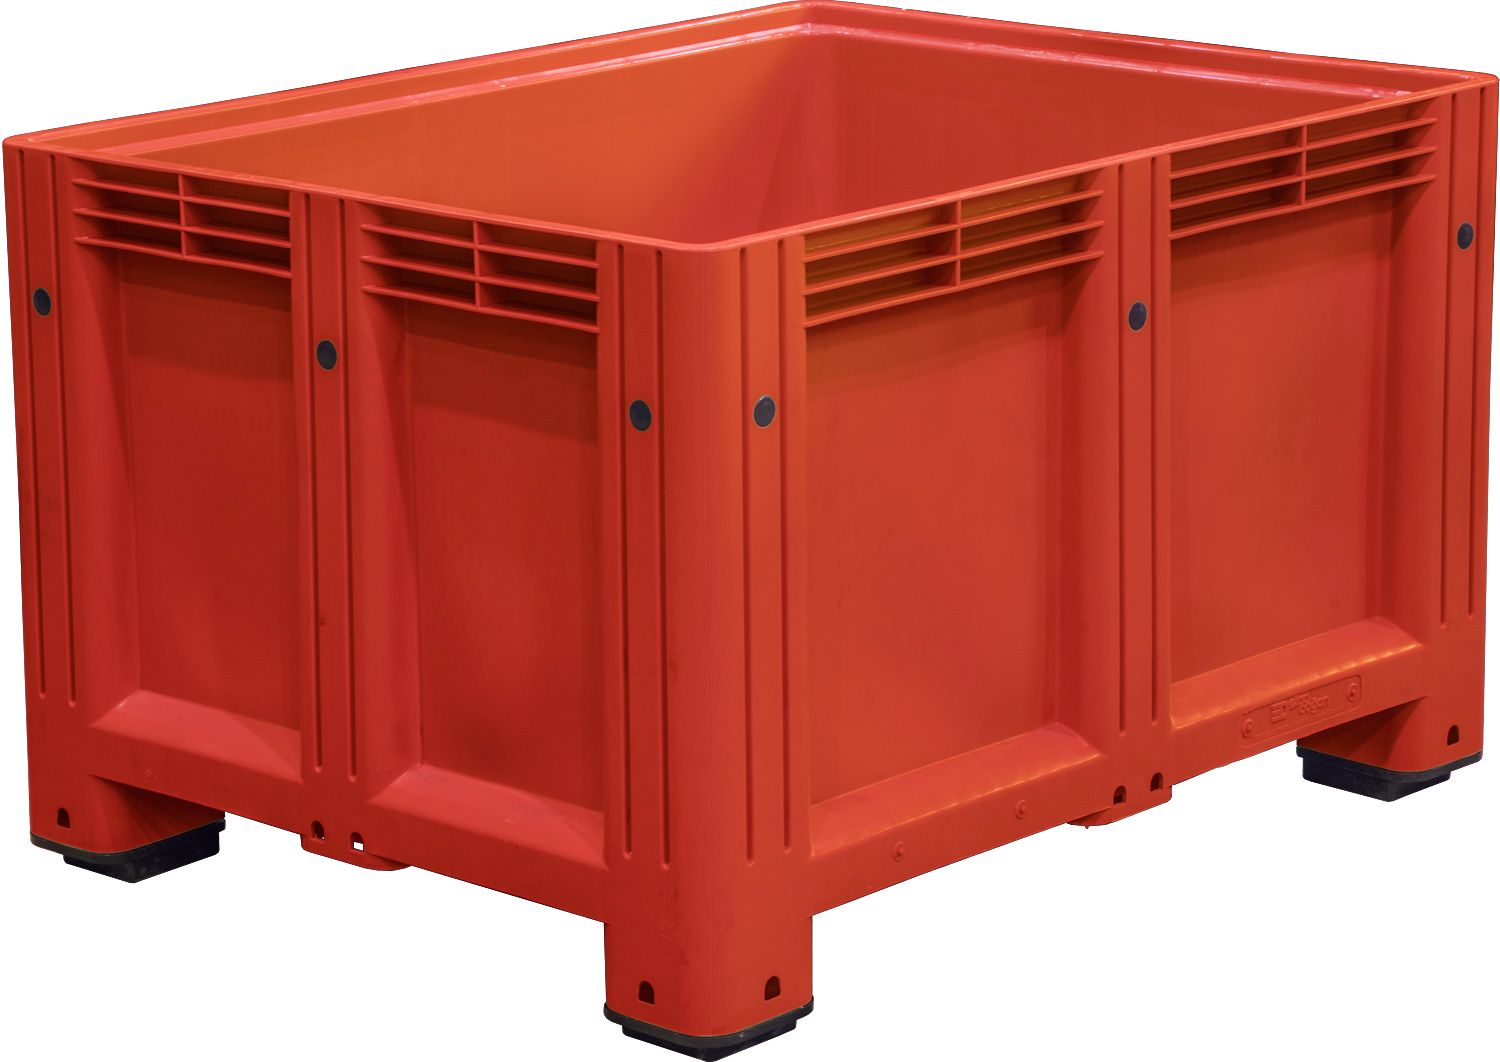 Big Box сплошной на ножках D-Box 1210 S (760) красный 1200x1000x760 мм Полиэтилен низкого давления (HDPE) 625 л